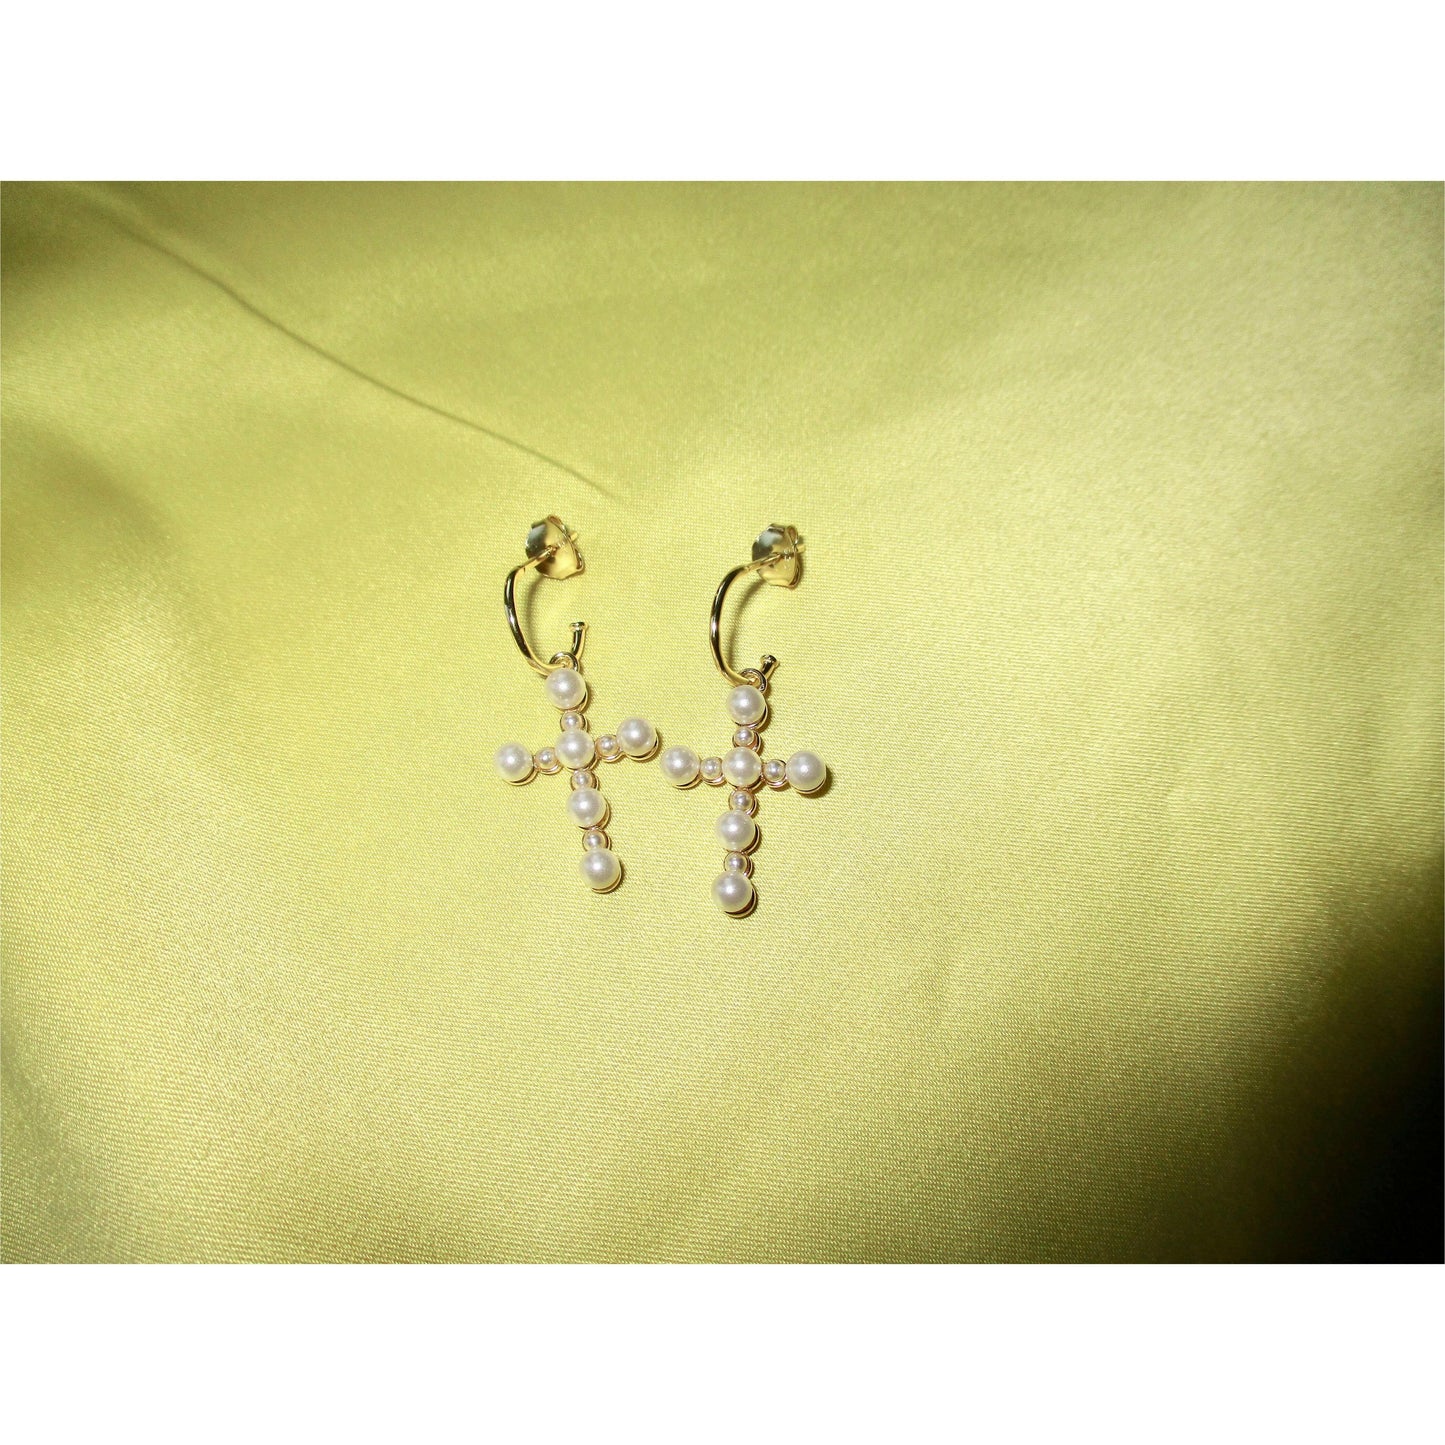 Pearl Cross Earrings - Lemon Lua Pearl Cross Earrings Lemon Lua Lemon Lua Pearl Cross Earrings Pearl Cross Earrings